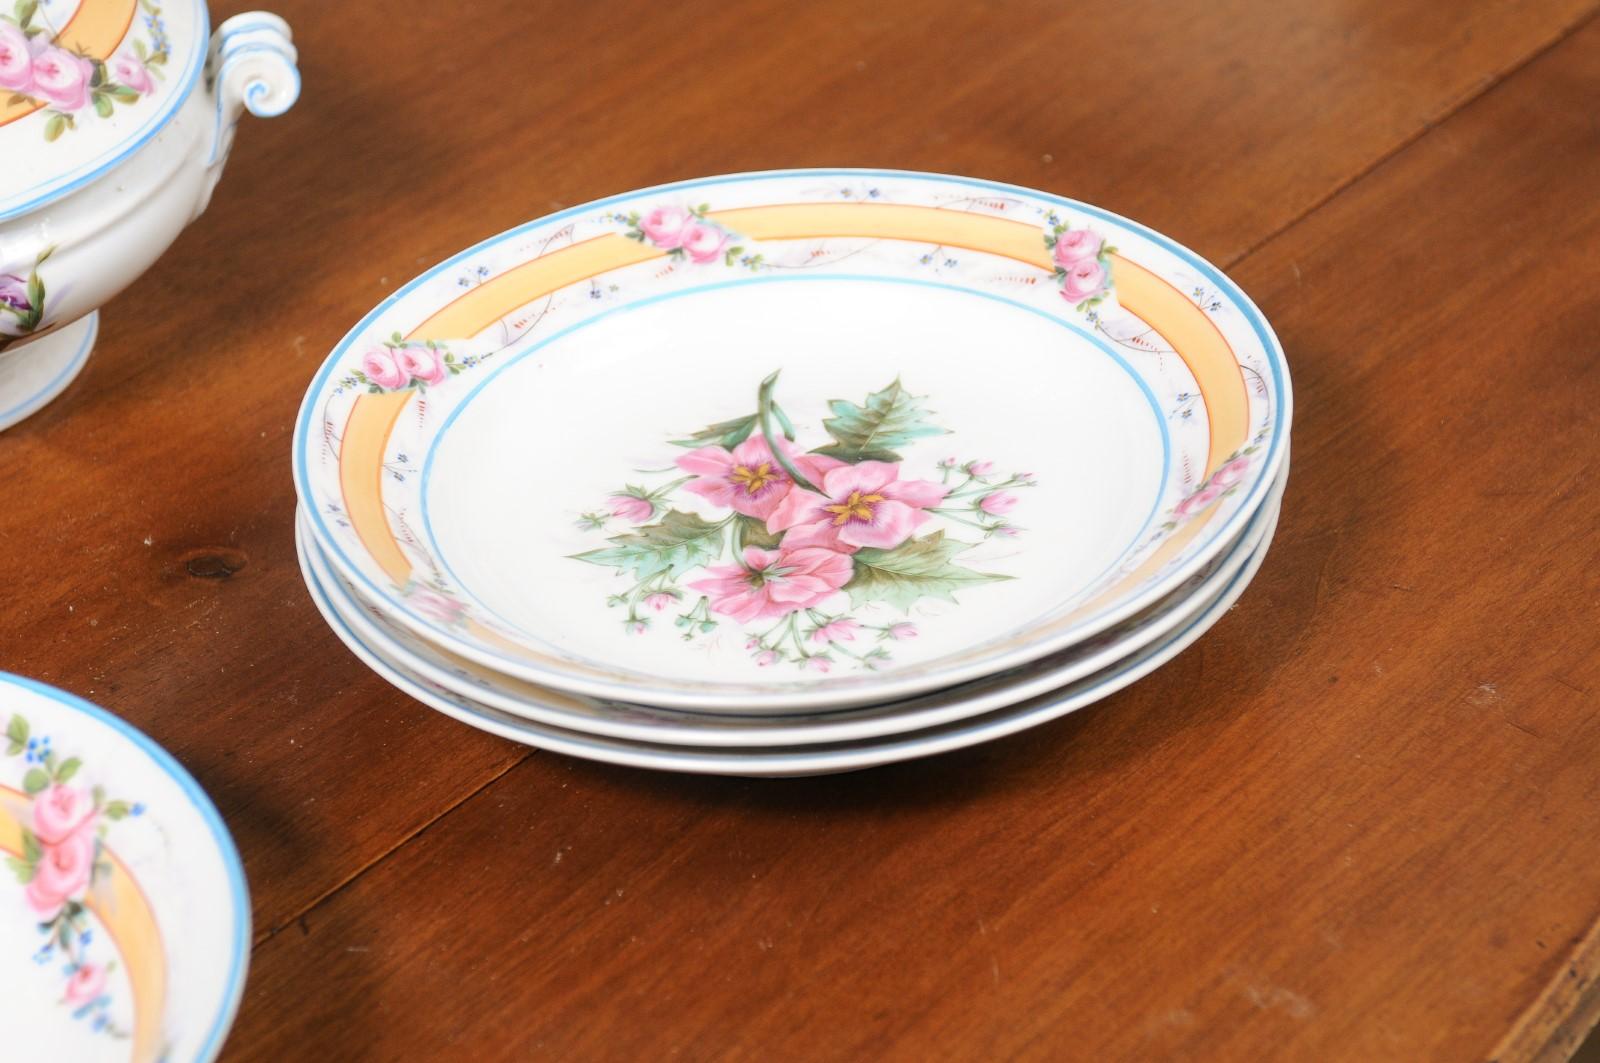 Porcelaine de Paris 19th Century Floral Dish Set with Casserole and Plates For Sale 1